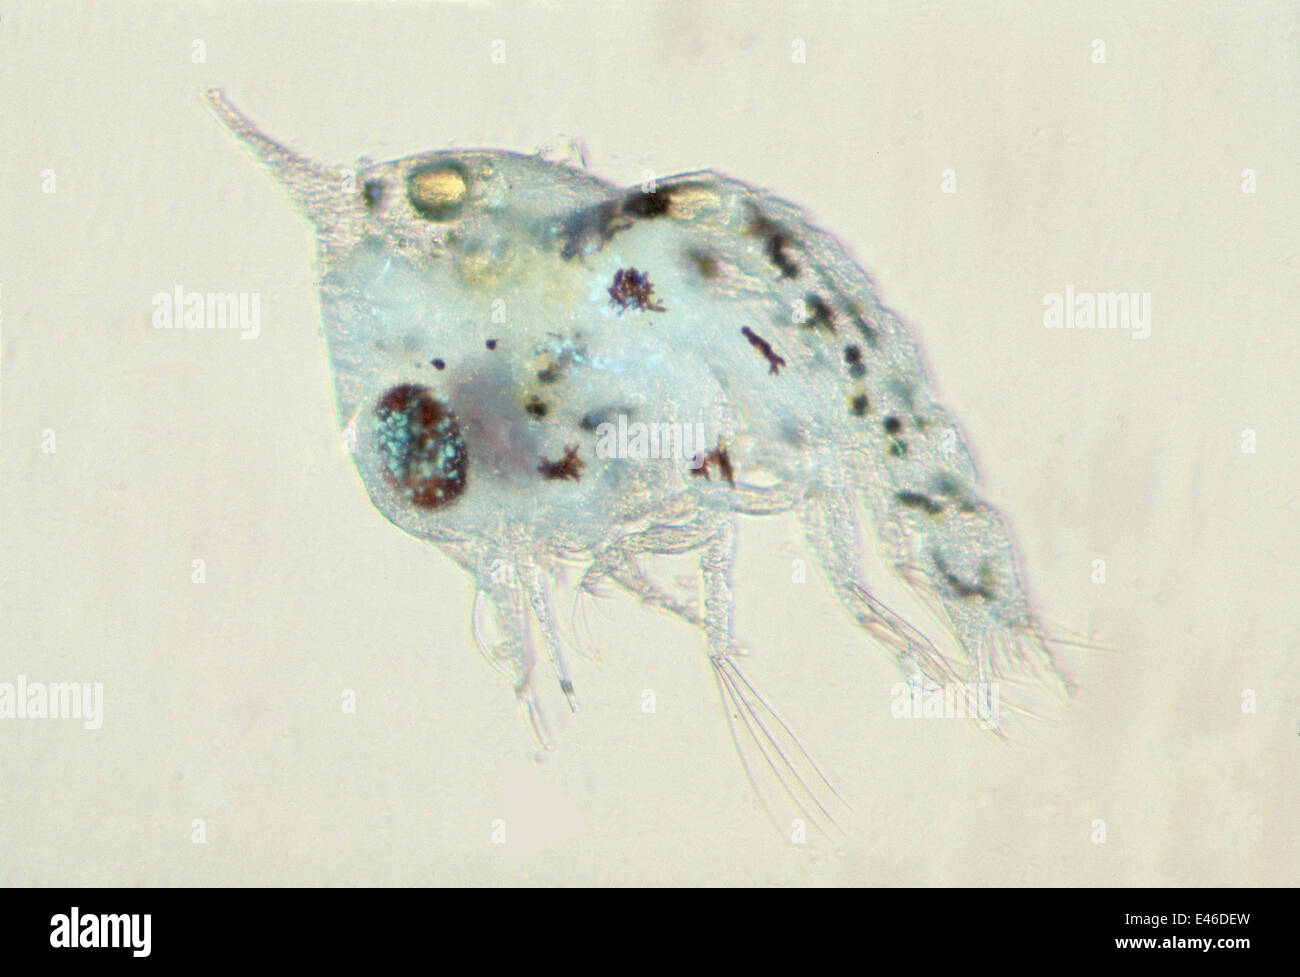 Le plancton. Zoé de crabe. Larve de crabe de la reproduction. L'Australie Queenscliff Banque D'Images